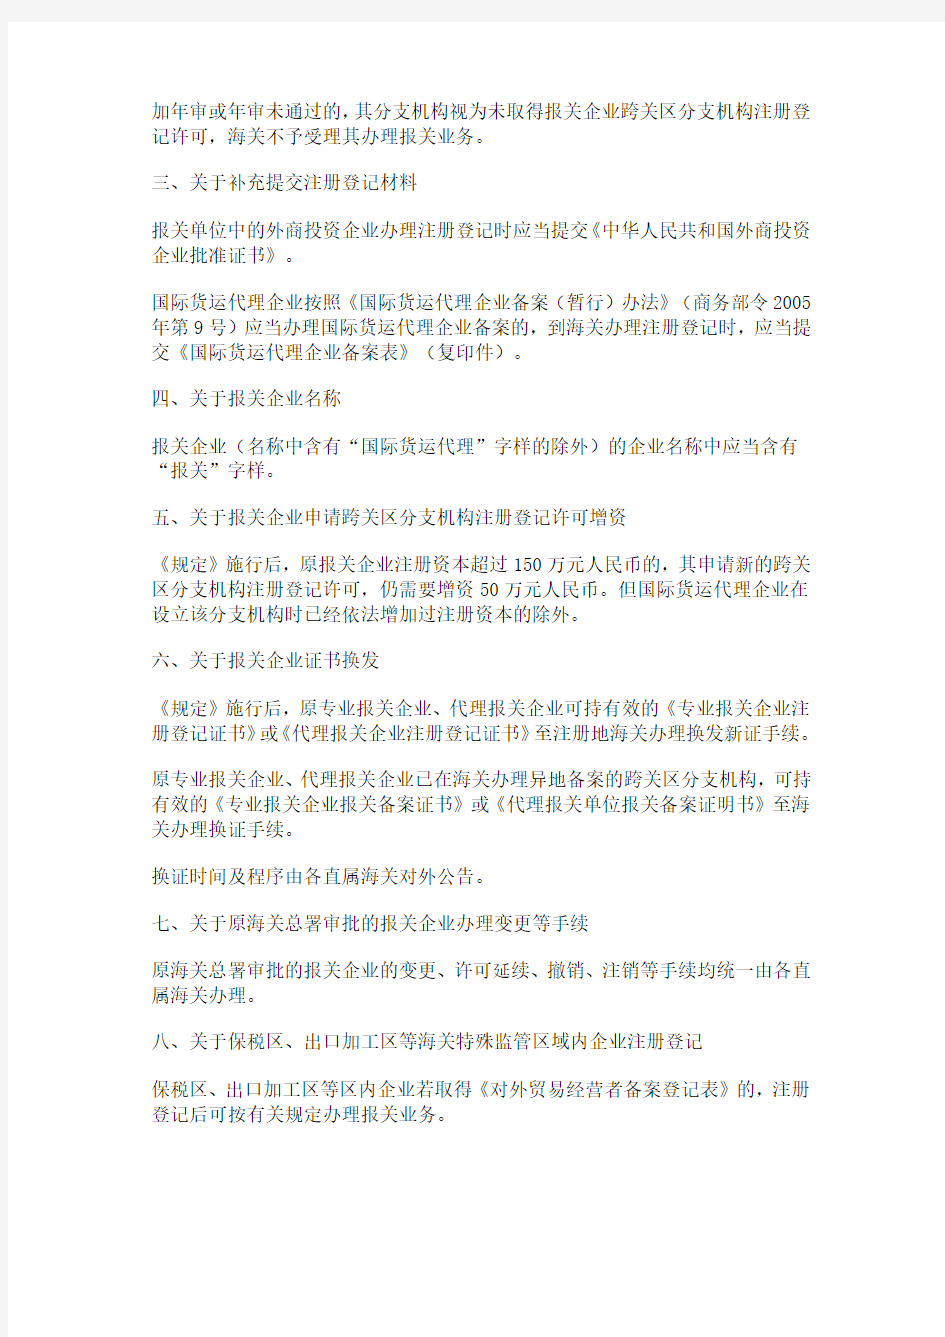 海关总署关于《中华人民共和国海关对报关单位注册登记管理规定》的公告